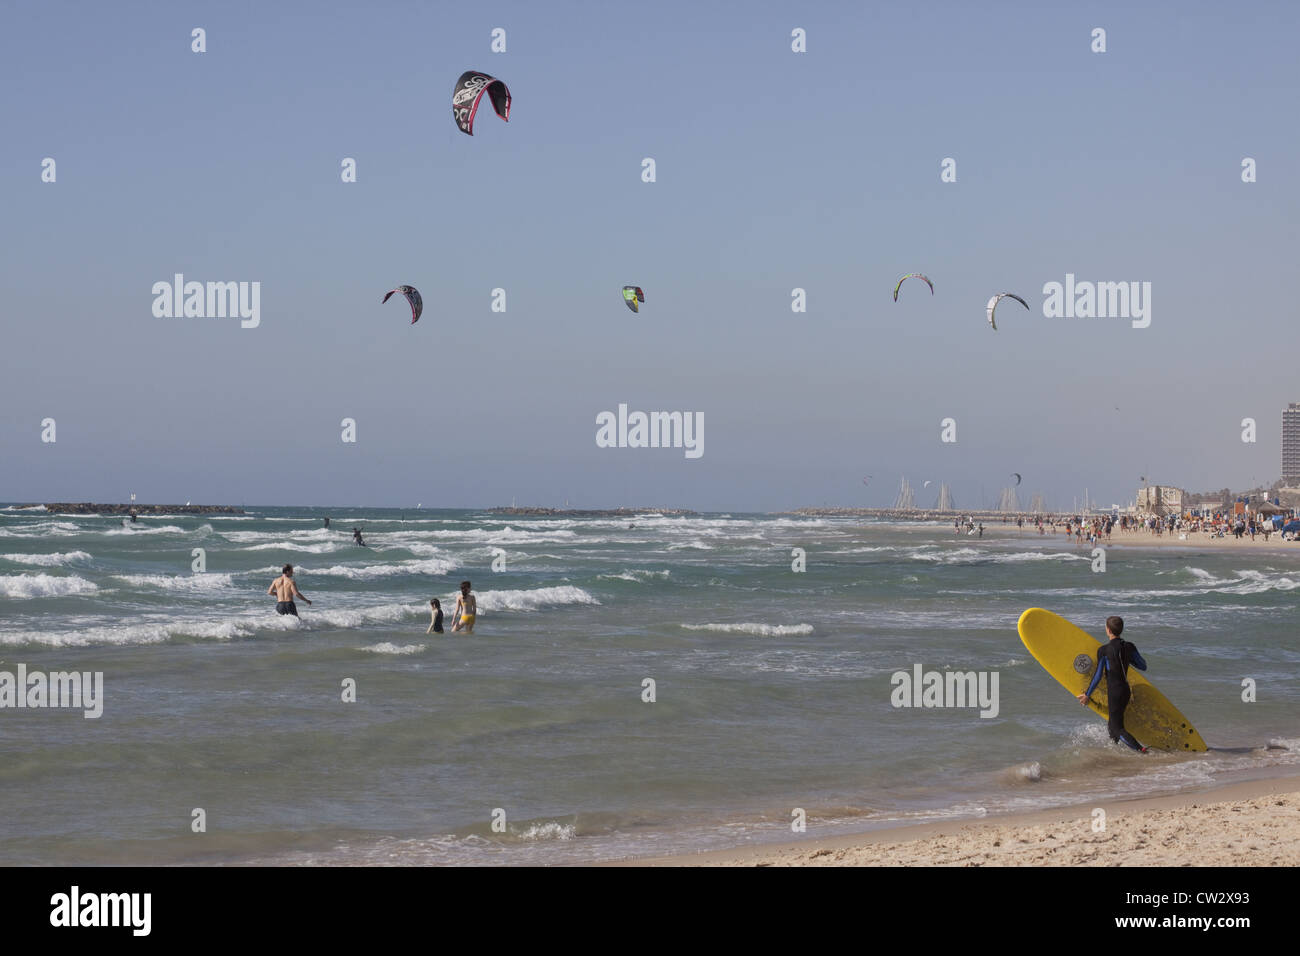 Surfer dans l'eau avec kite-surfeurs et les nageurs dans l'arrière-plan, Tel Aviv, Israël Banque D'Images